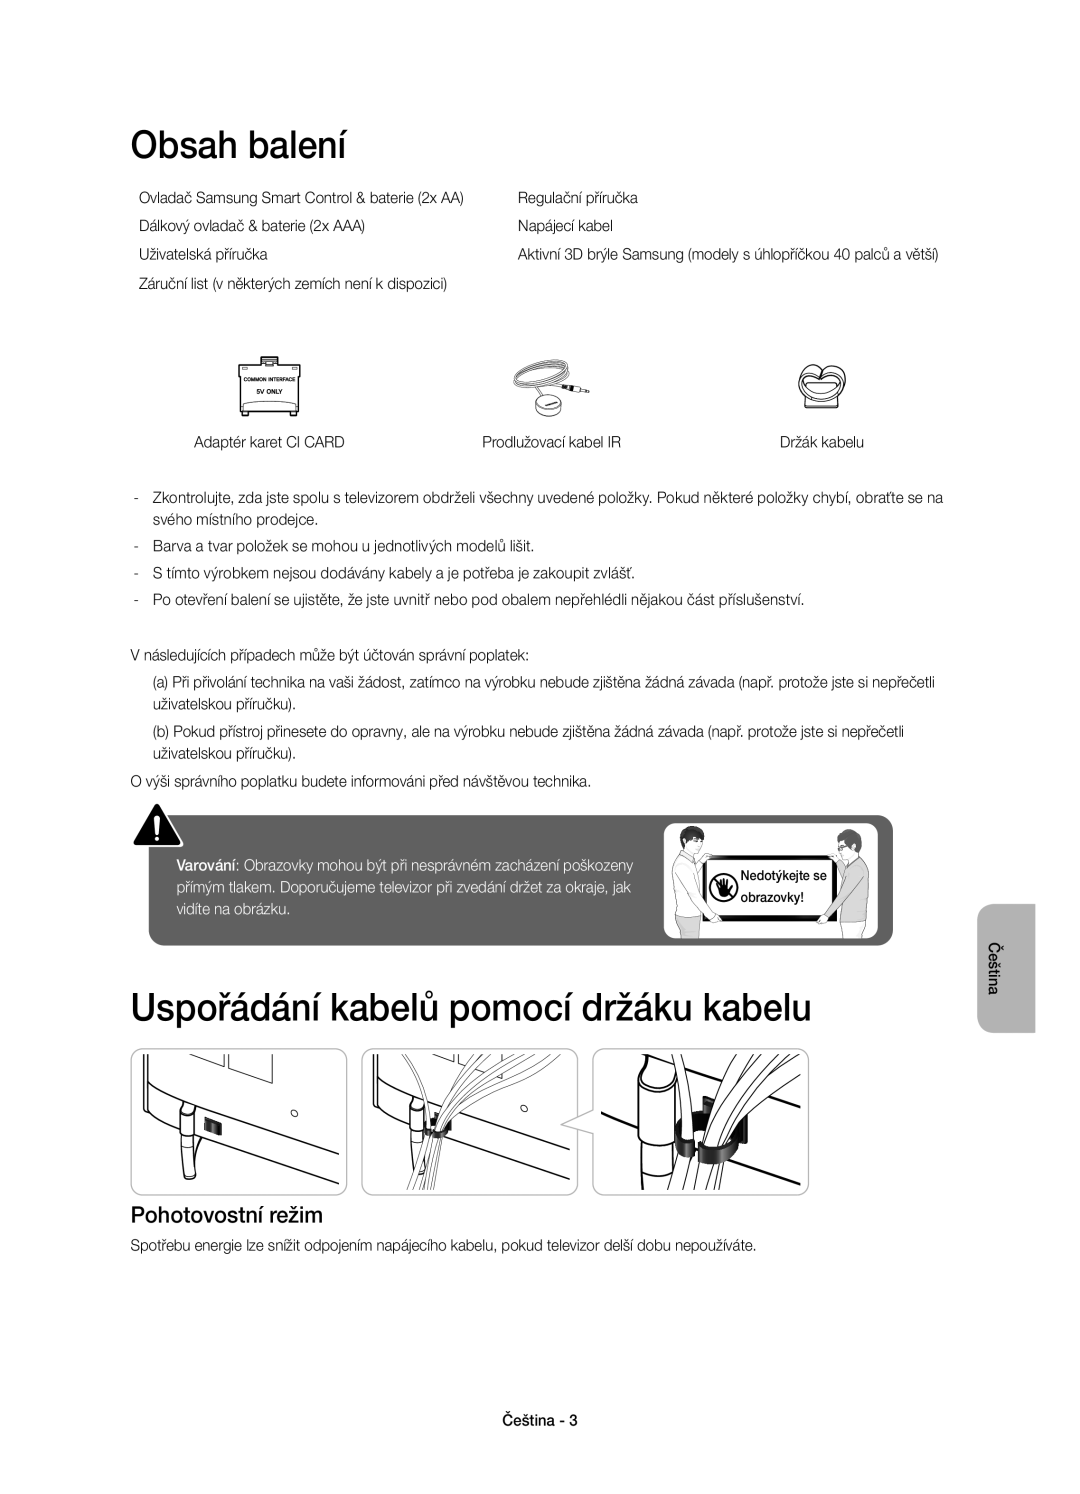 Samsung UE55H6410SUXXH manual Obsah balení, Uspořádání kabelů pomocí držáku kabelu, Pohotovostní režim, vidíte na obrázku 